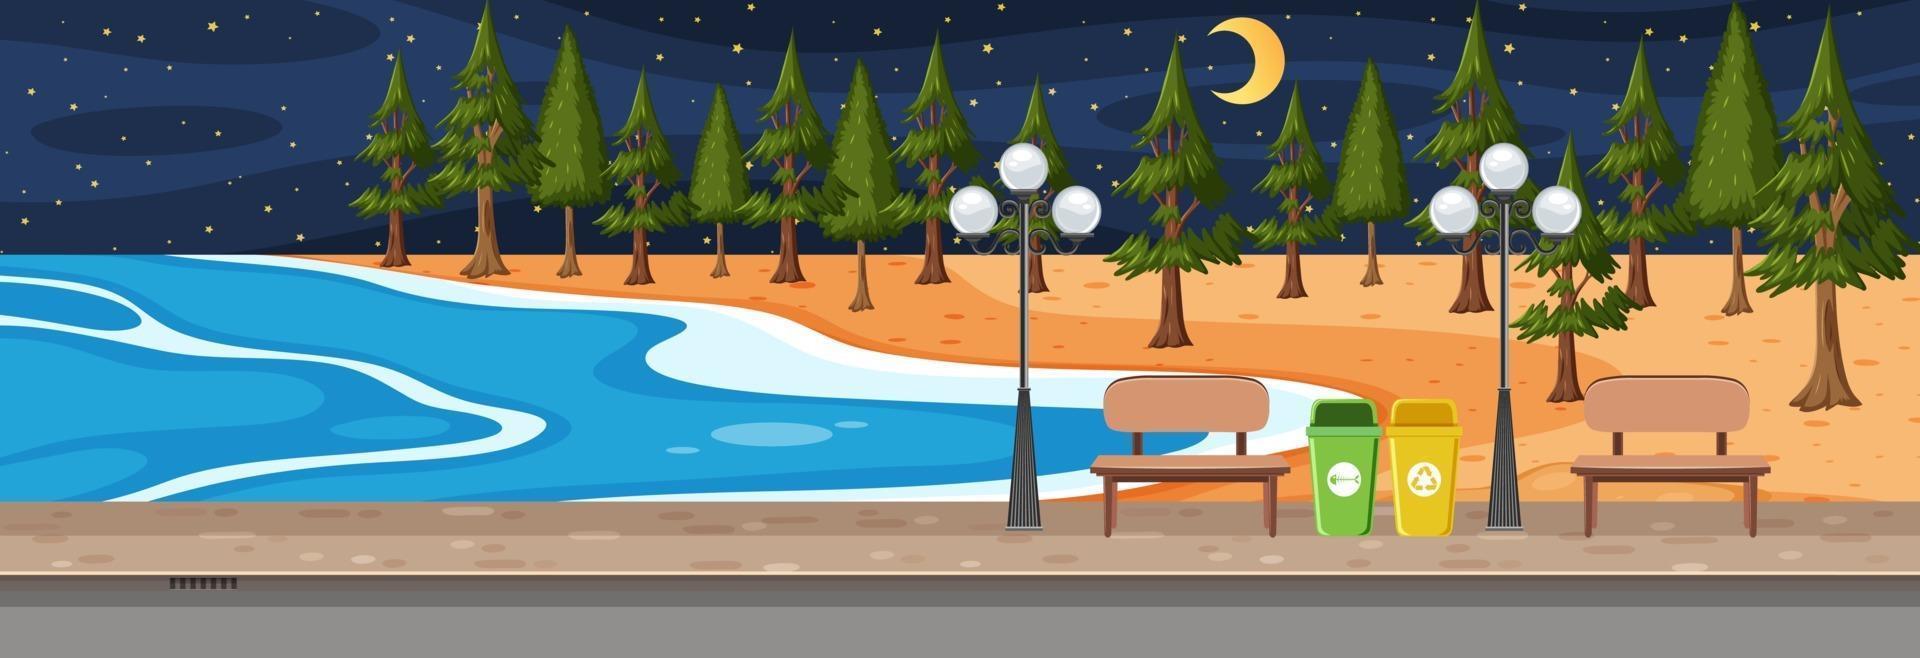 Escena horizontal del parque de playa por la noche. vector